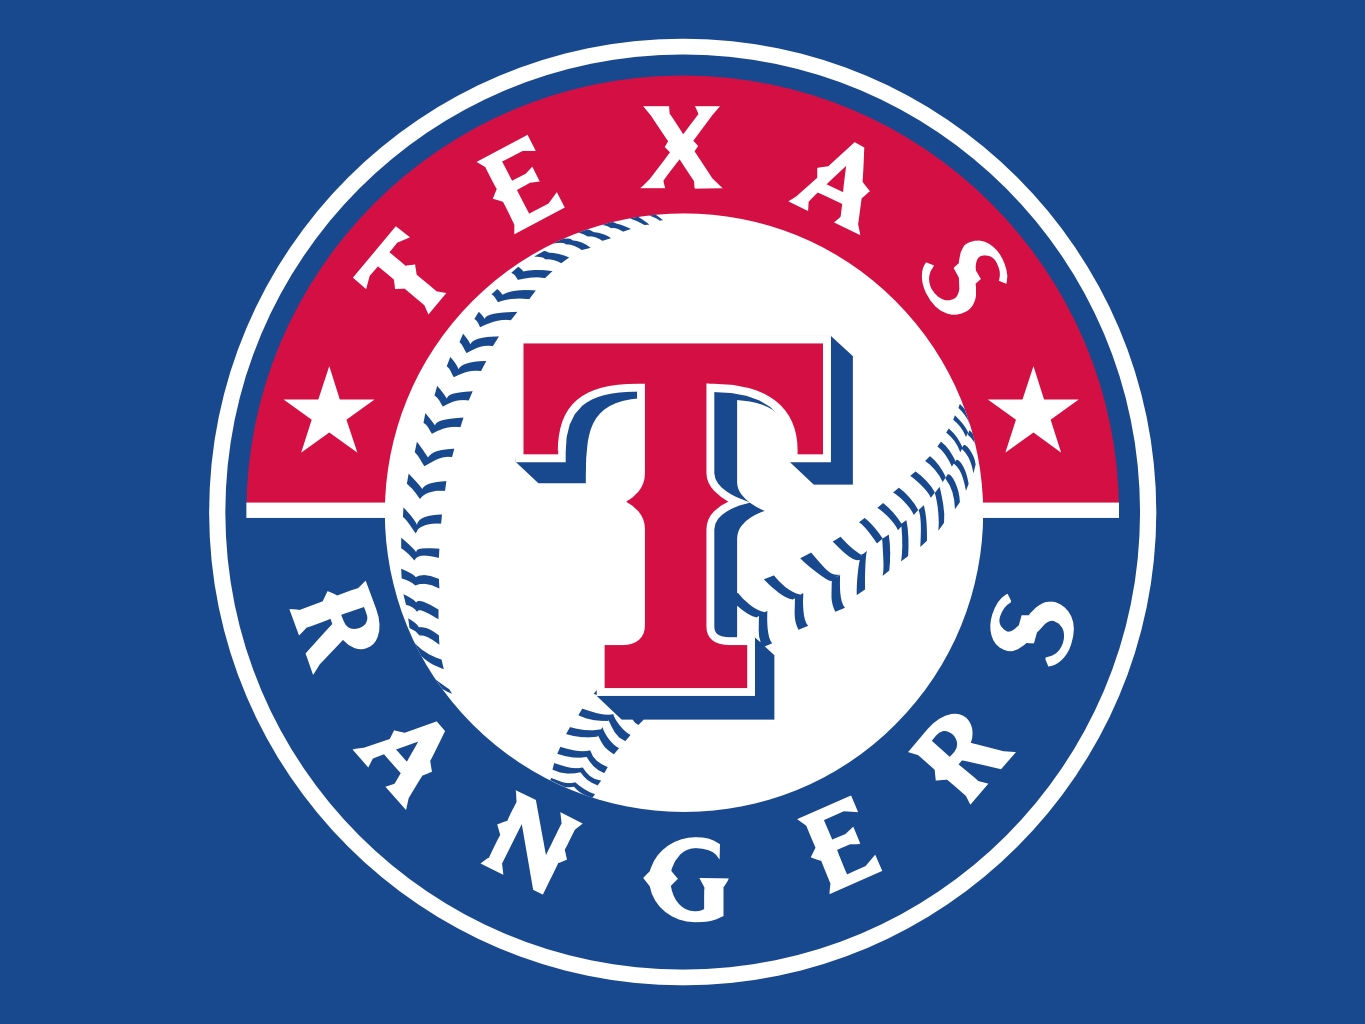 Texas Rangers HD Wallpaper